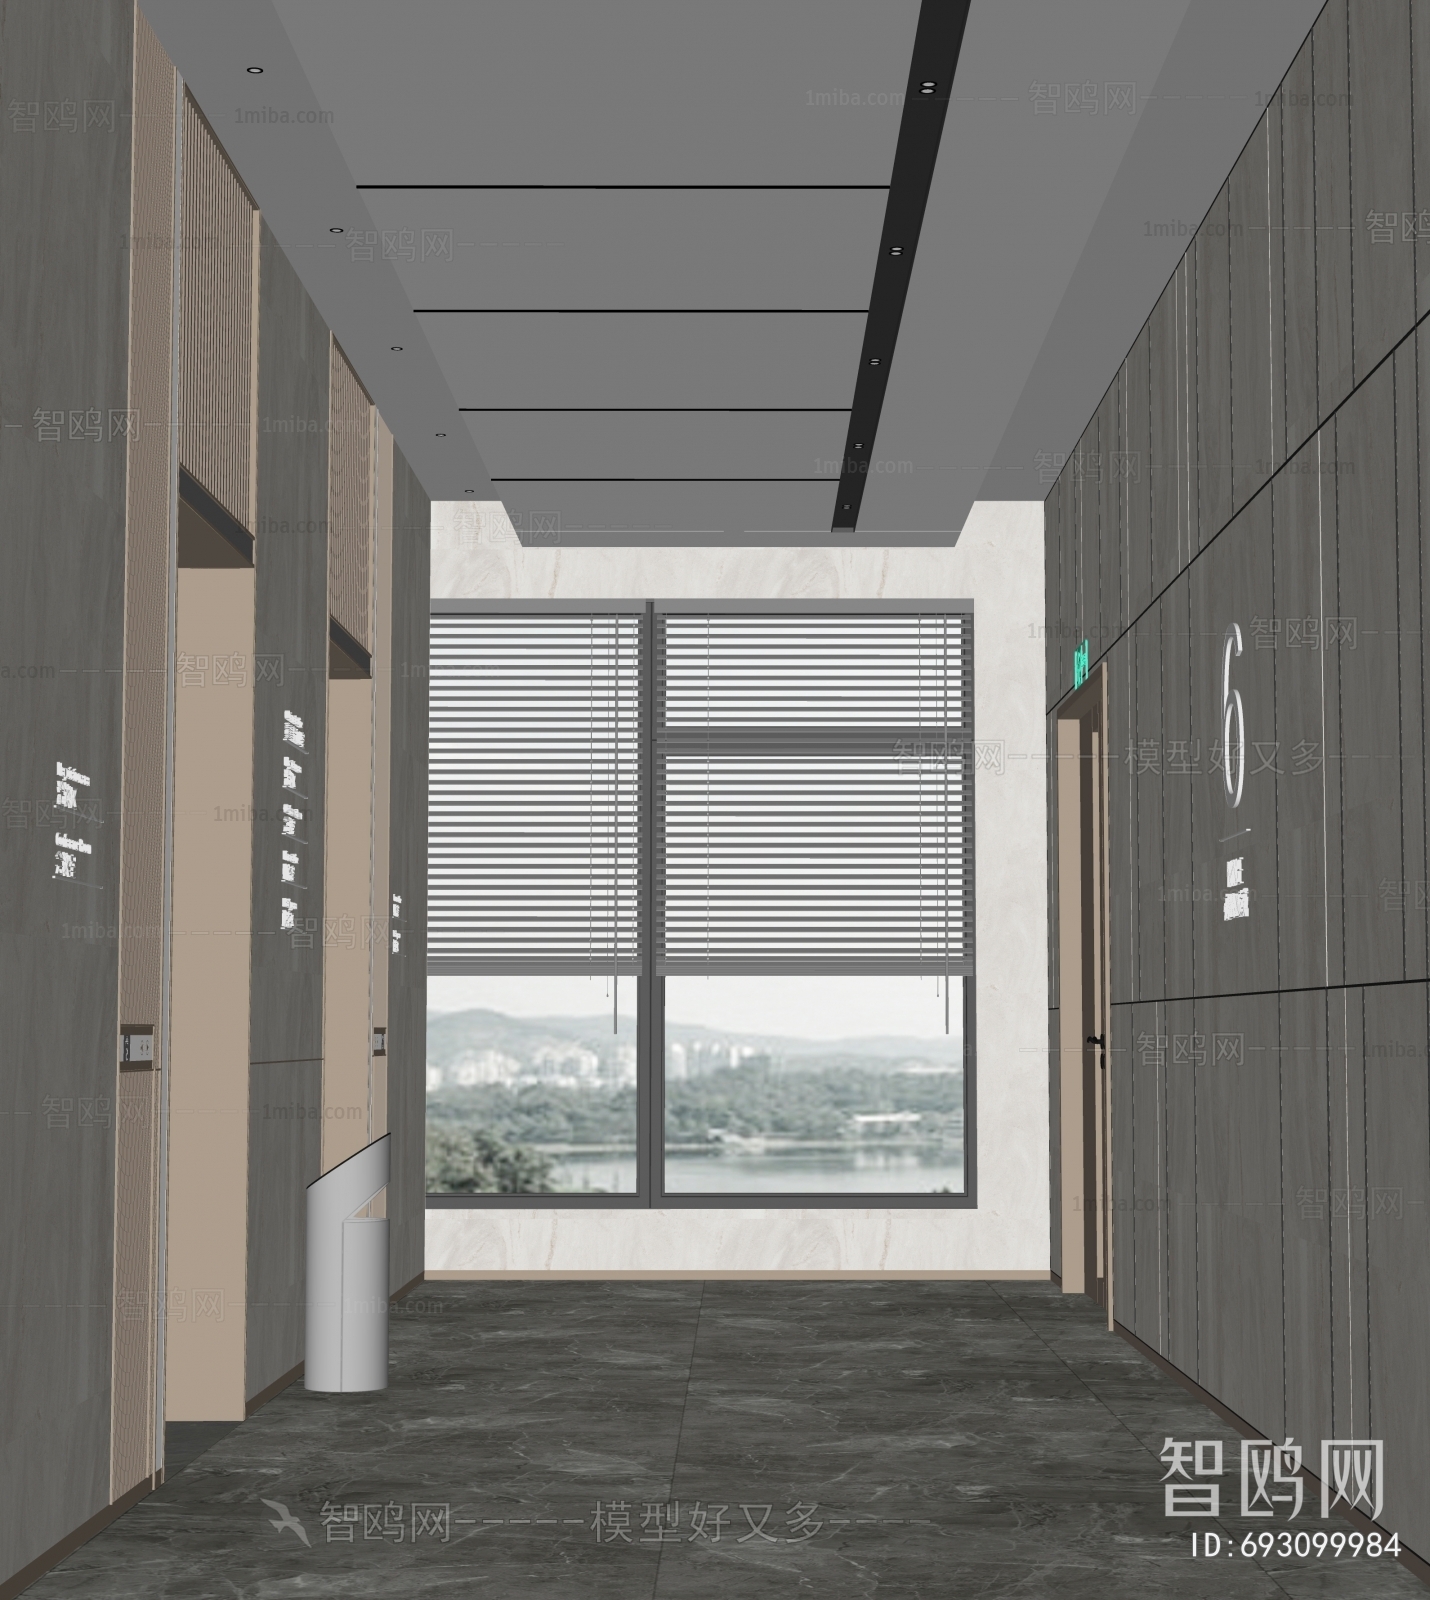 现代办公电梯厅